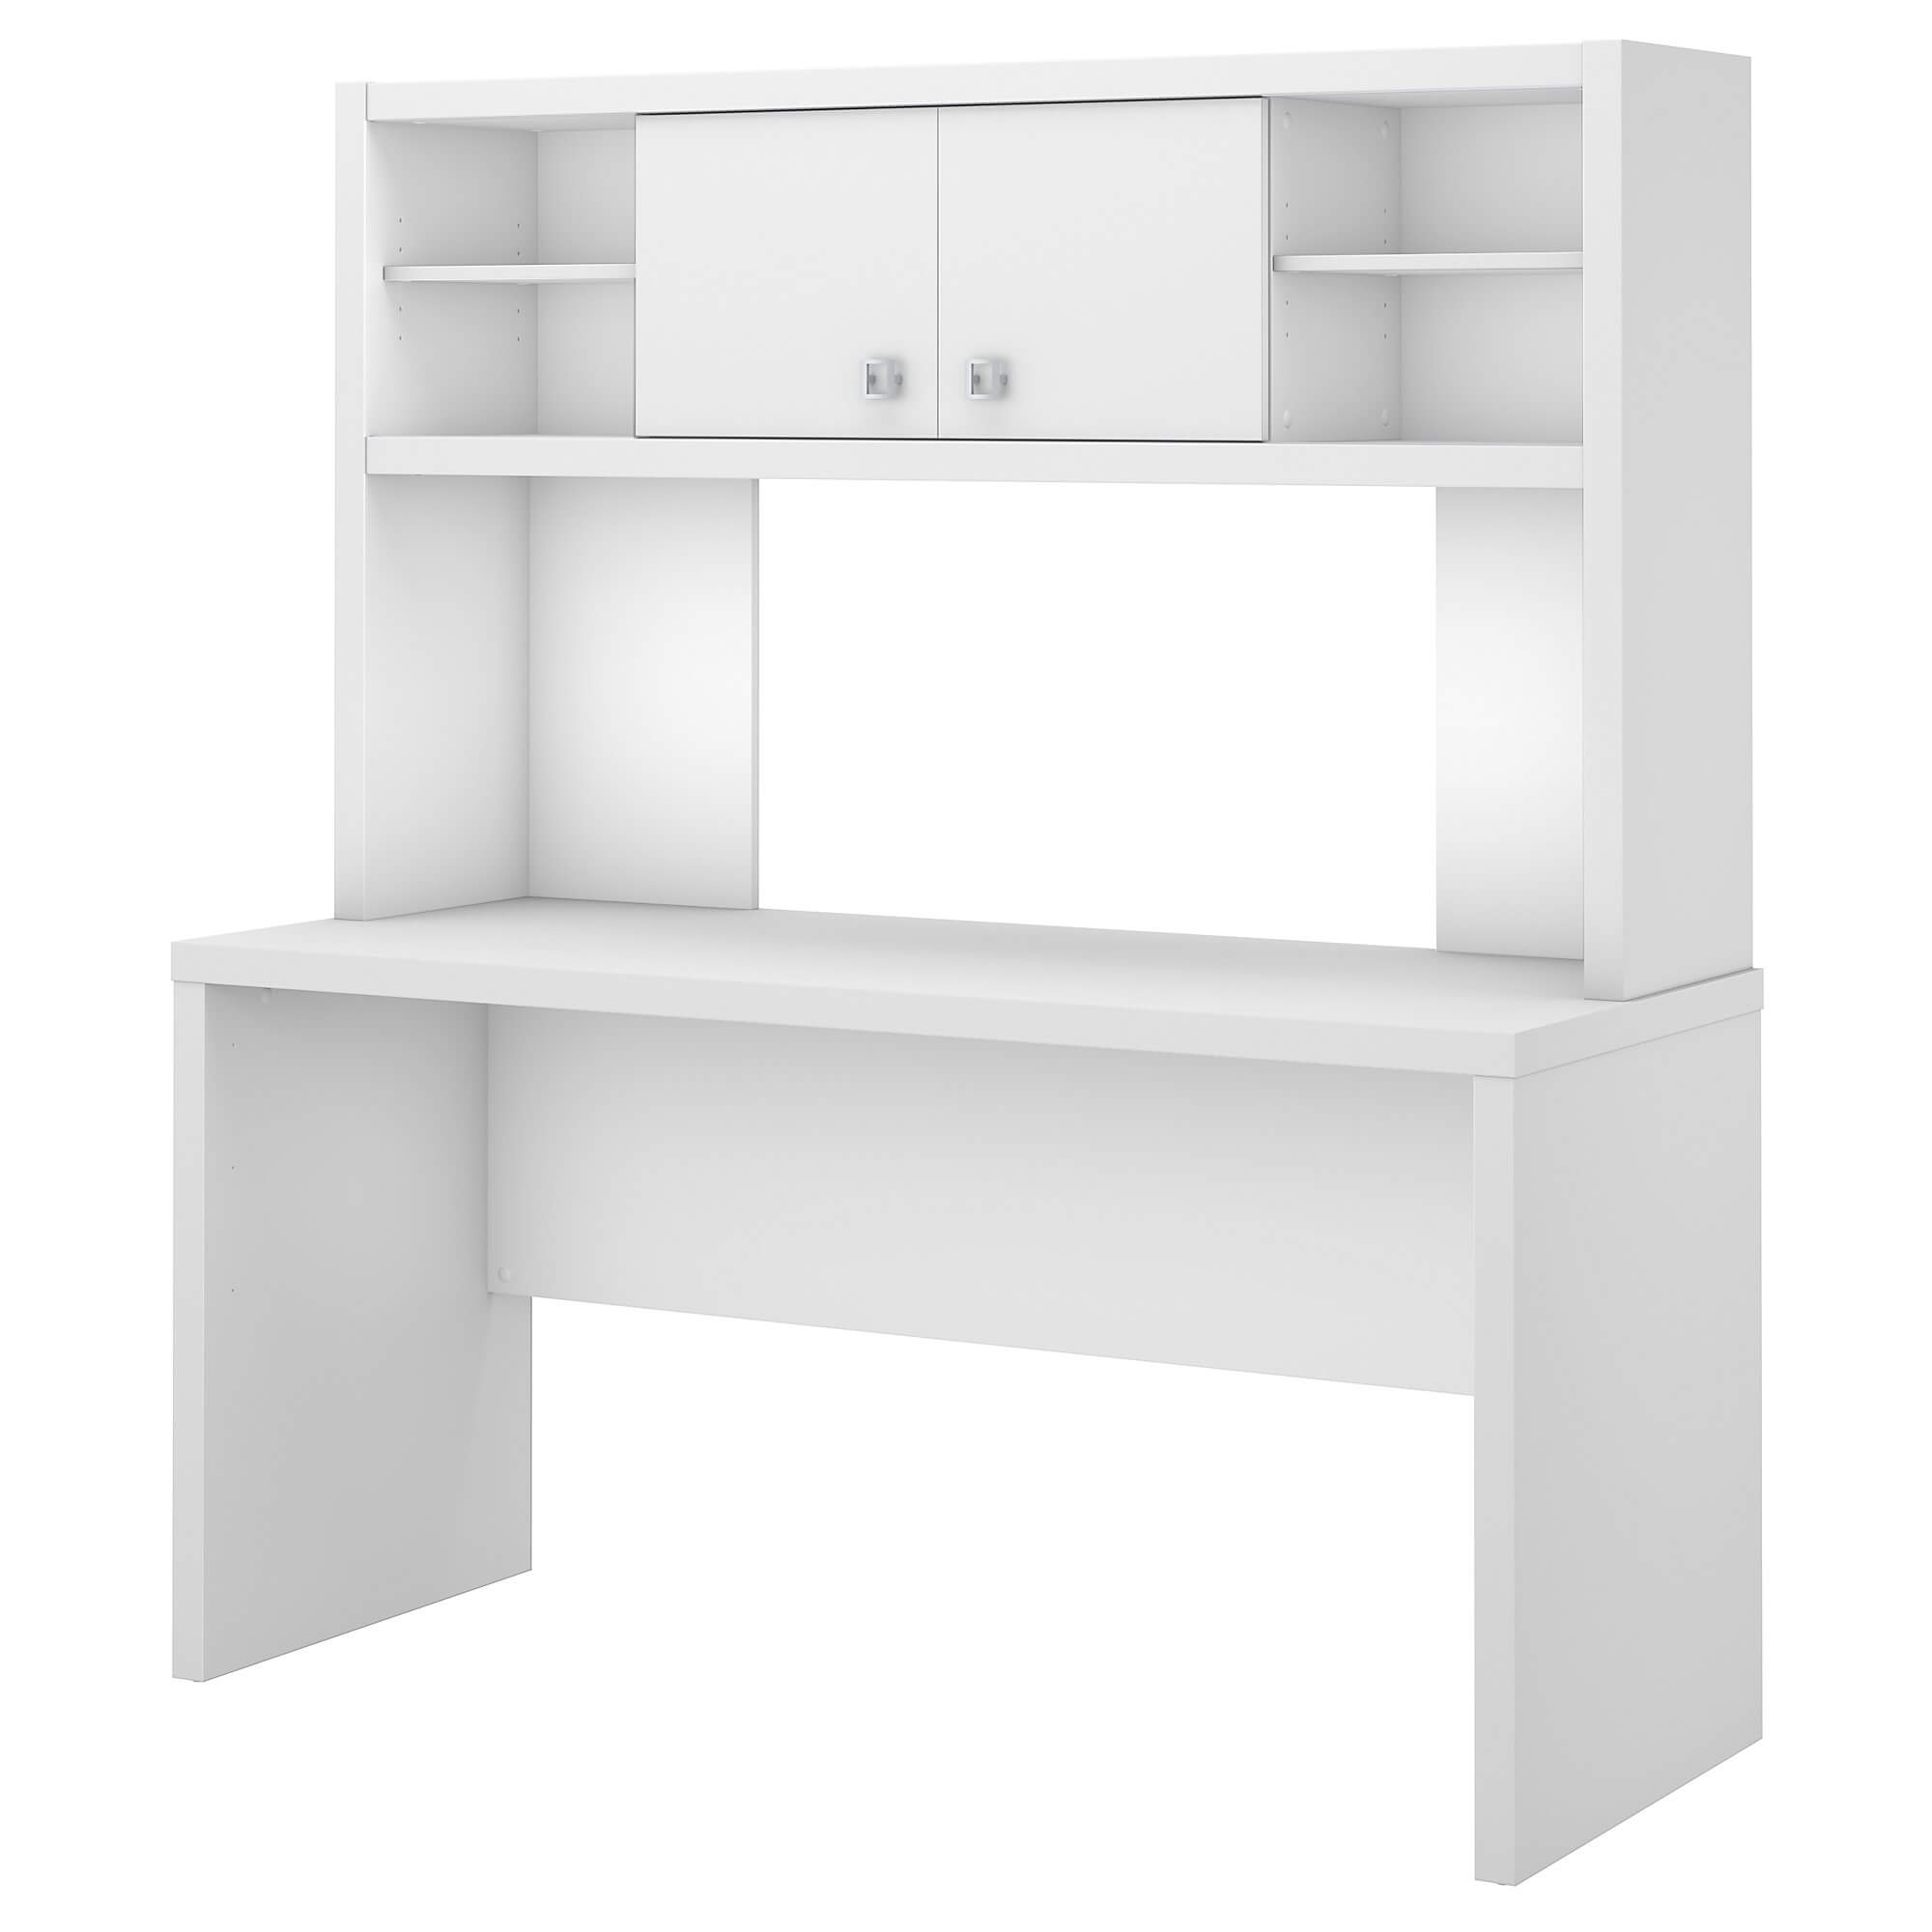 desk-furniture-affordable-modern-desk.jpg